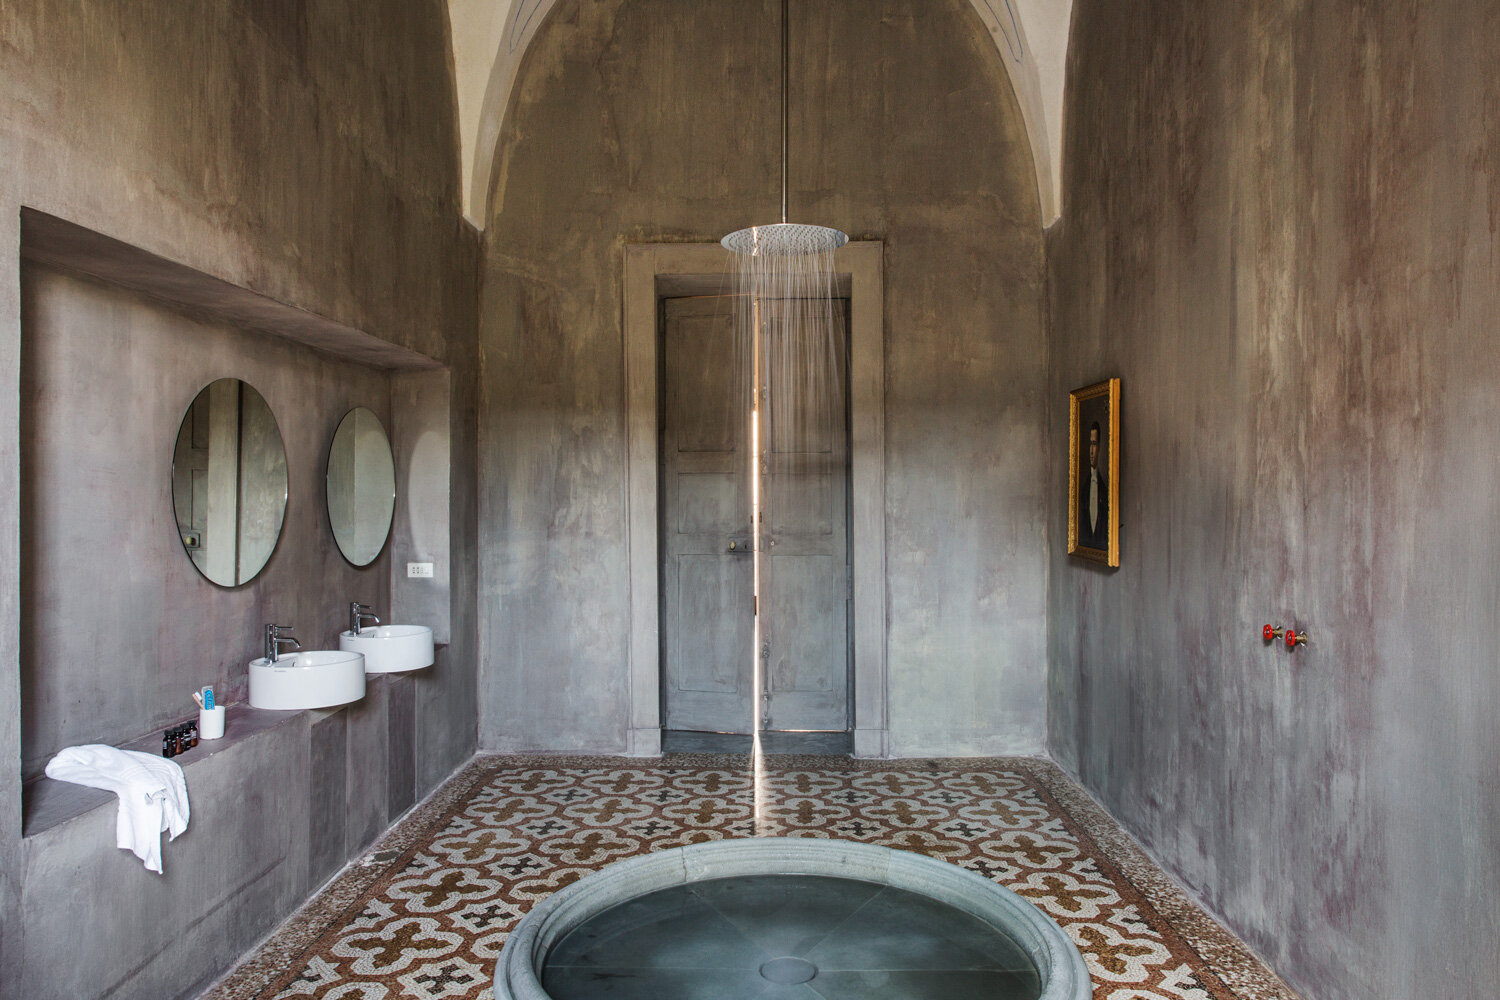 Palazzo-daniele-shower-2.jpg